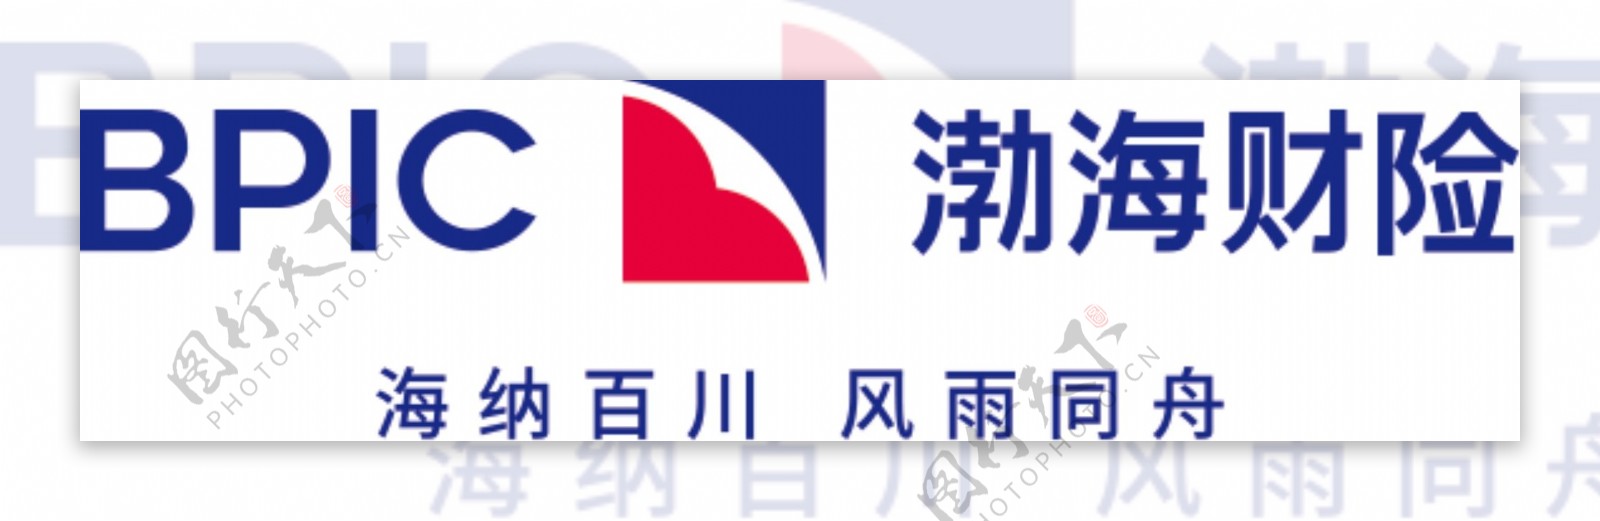 渤海财险logo